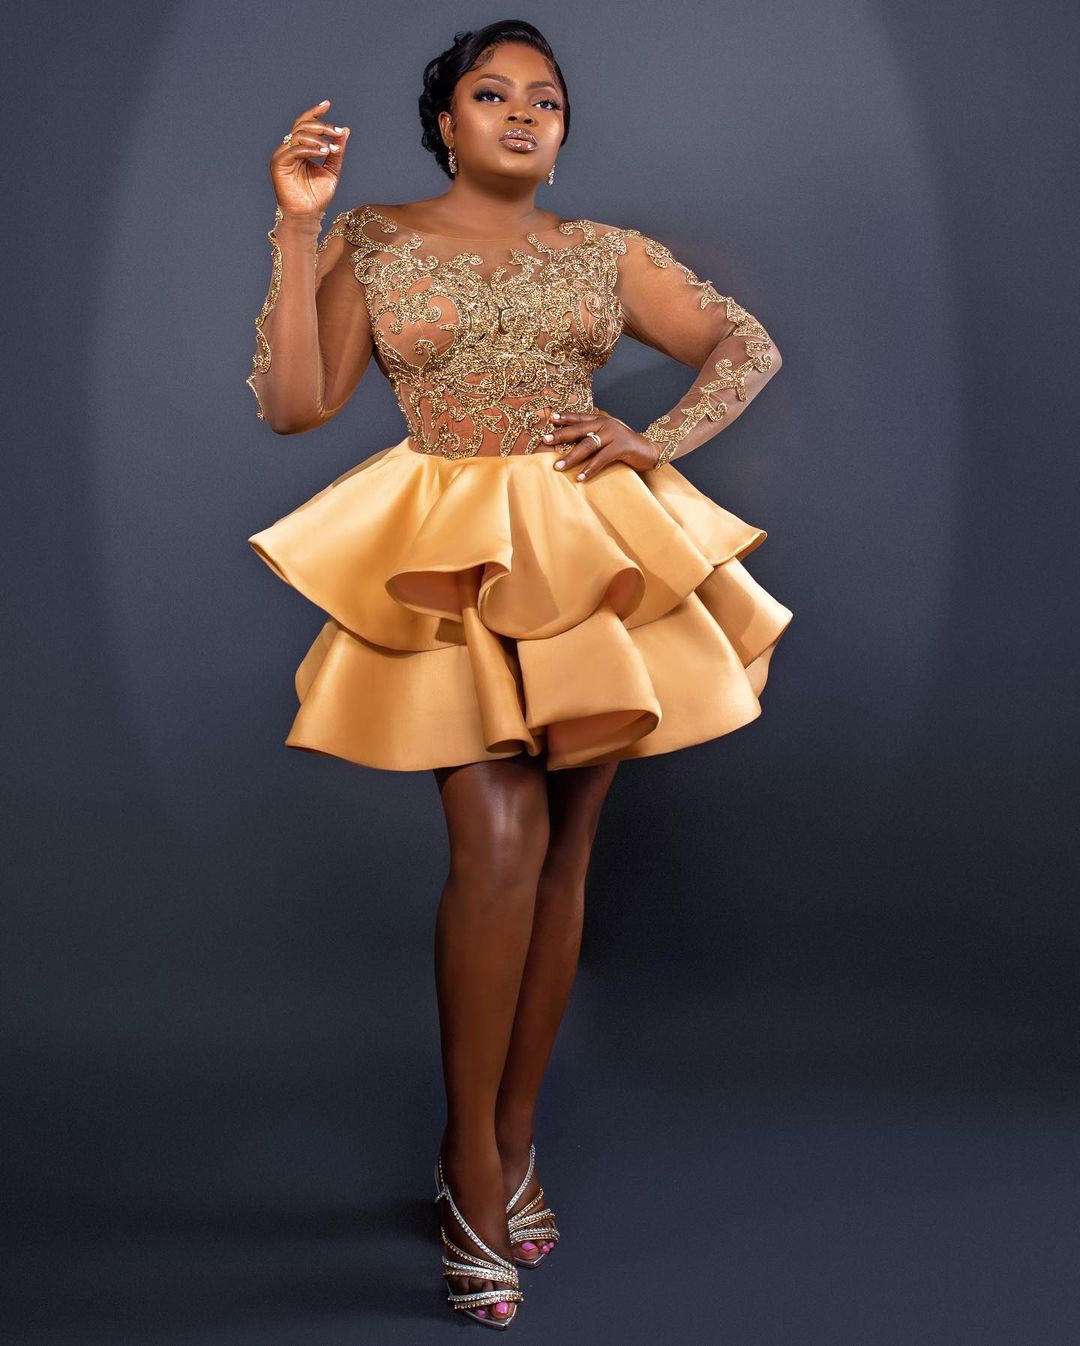 Funke Akindele- Stylish And Fun In Flare Gown